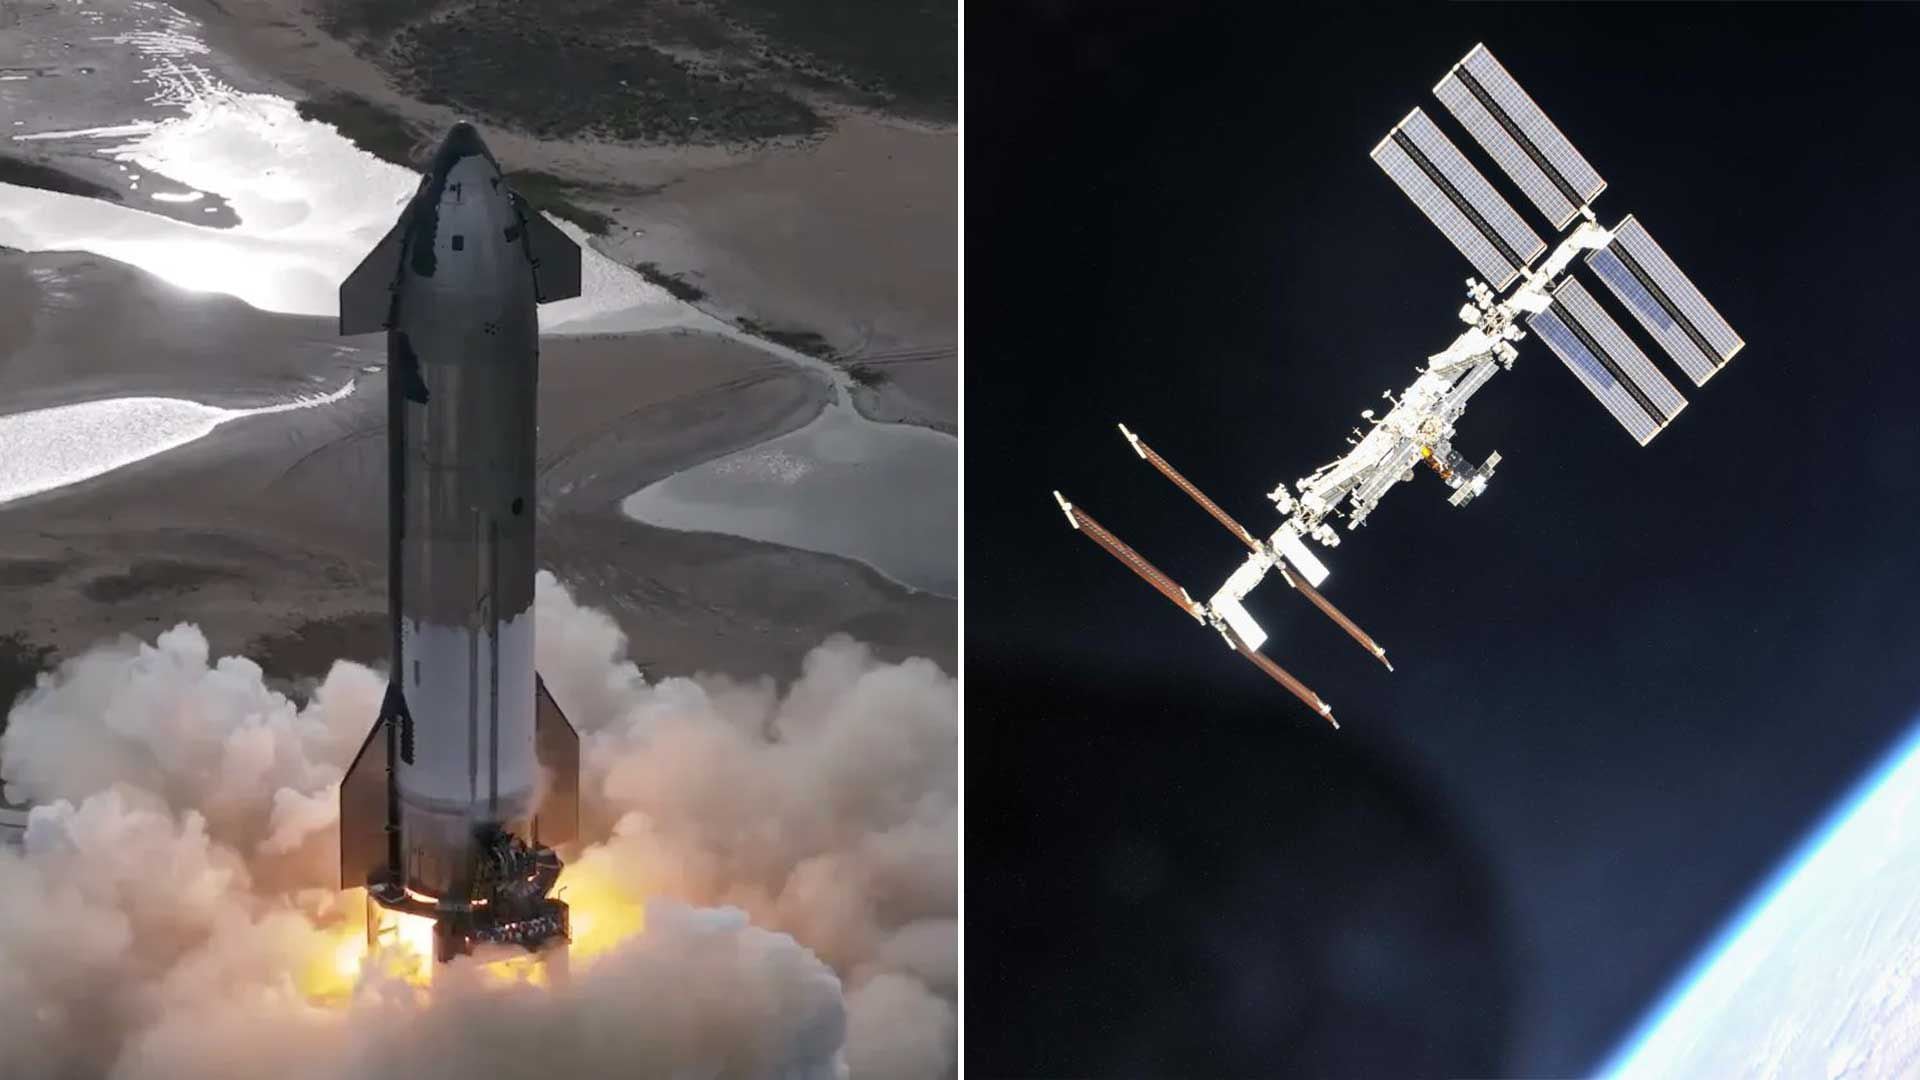 La NASA asignó a SpaceX desarrollar una nave para desorbitar la EEI en 2030, asegurando su destrucción segura al final de su vida útil.